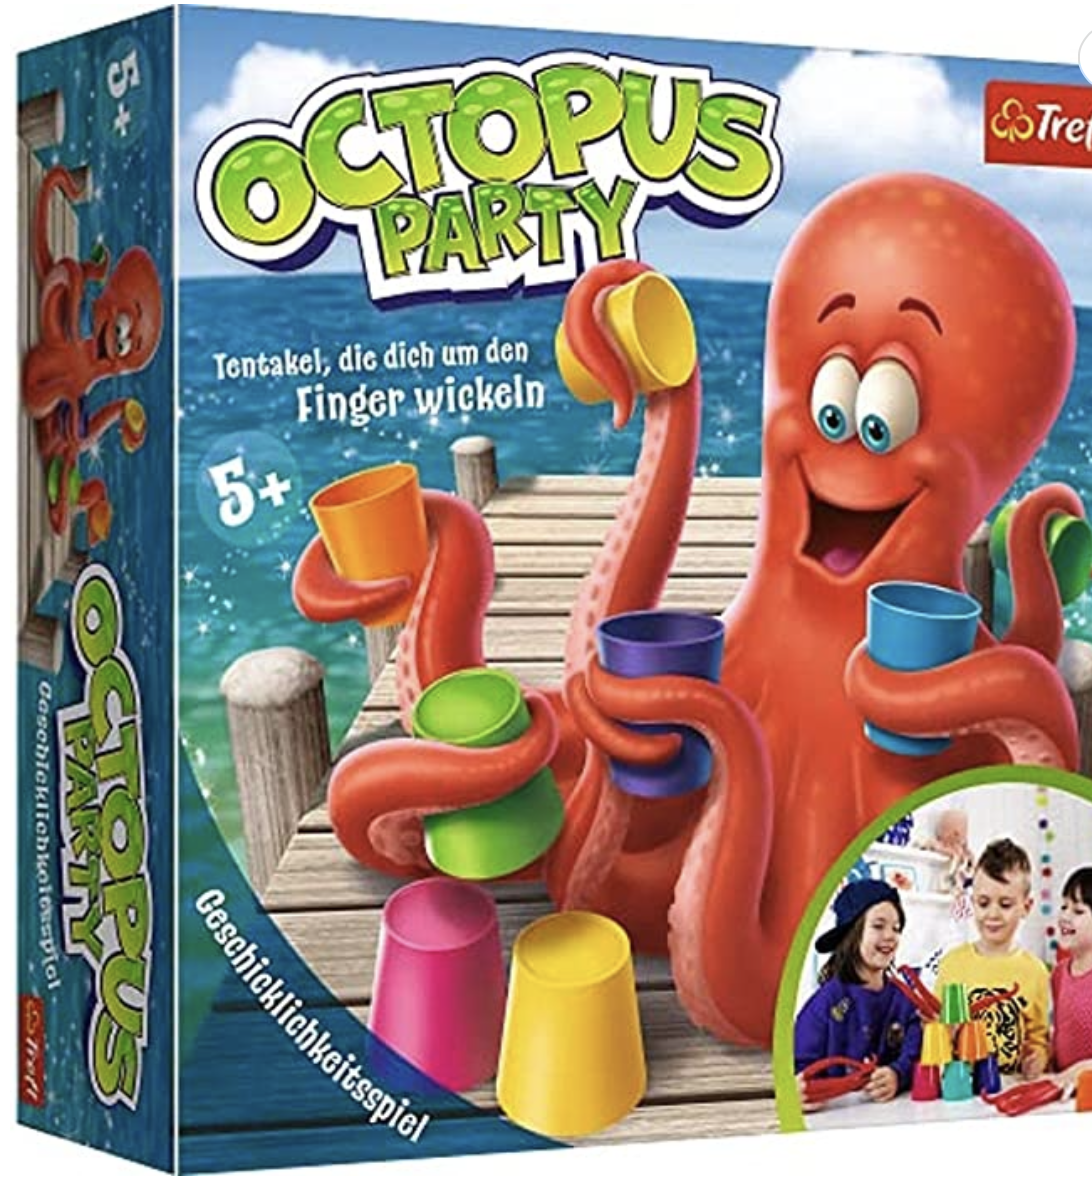  Spielspaß: Octopus-Party 